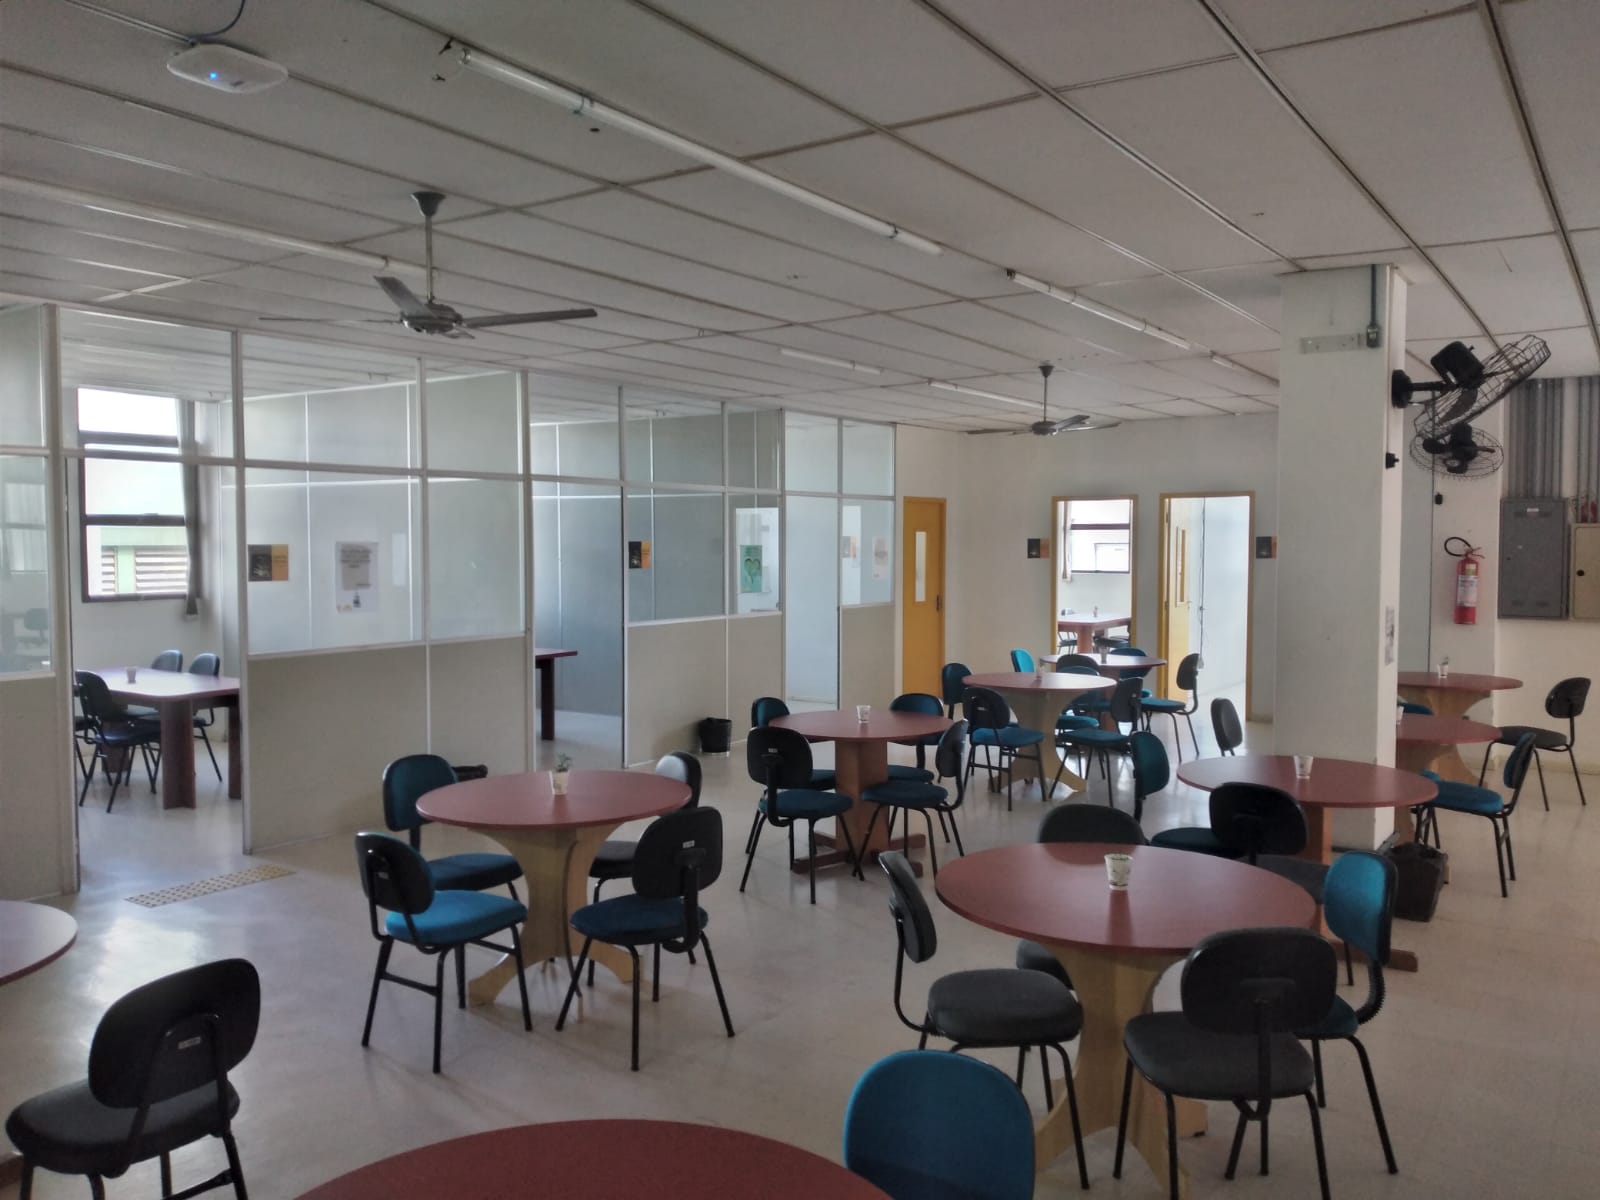 Foto do salão de estudos da Biblioteca Setorial da Área Acadêmica da Saúde, onde aparecem diversas mesas e cadeiras e salas de estudo em grupo.